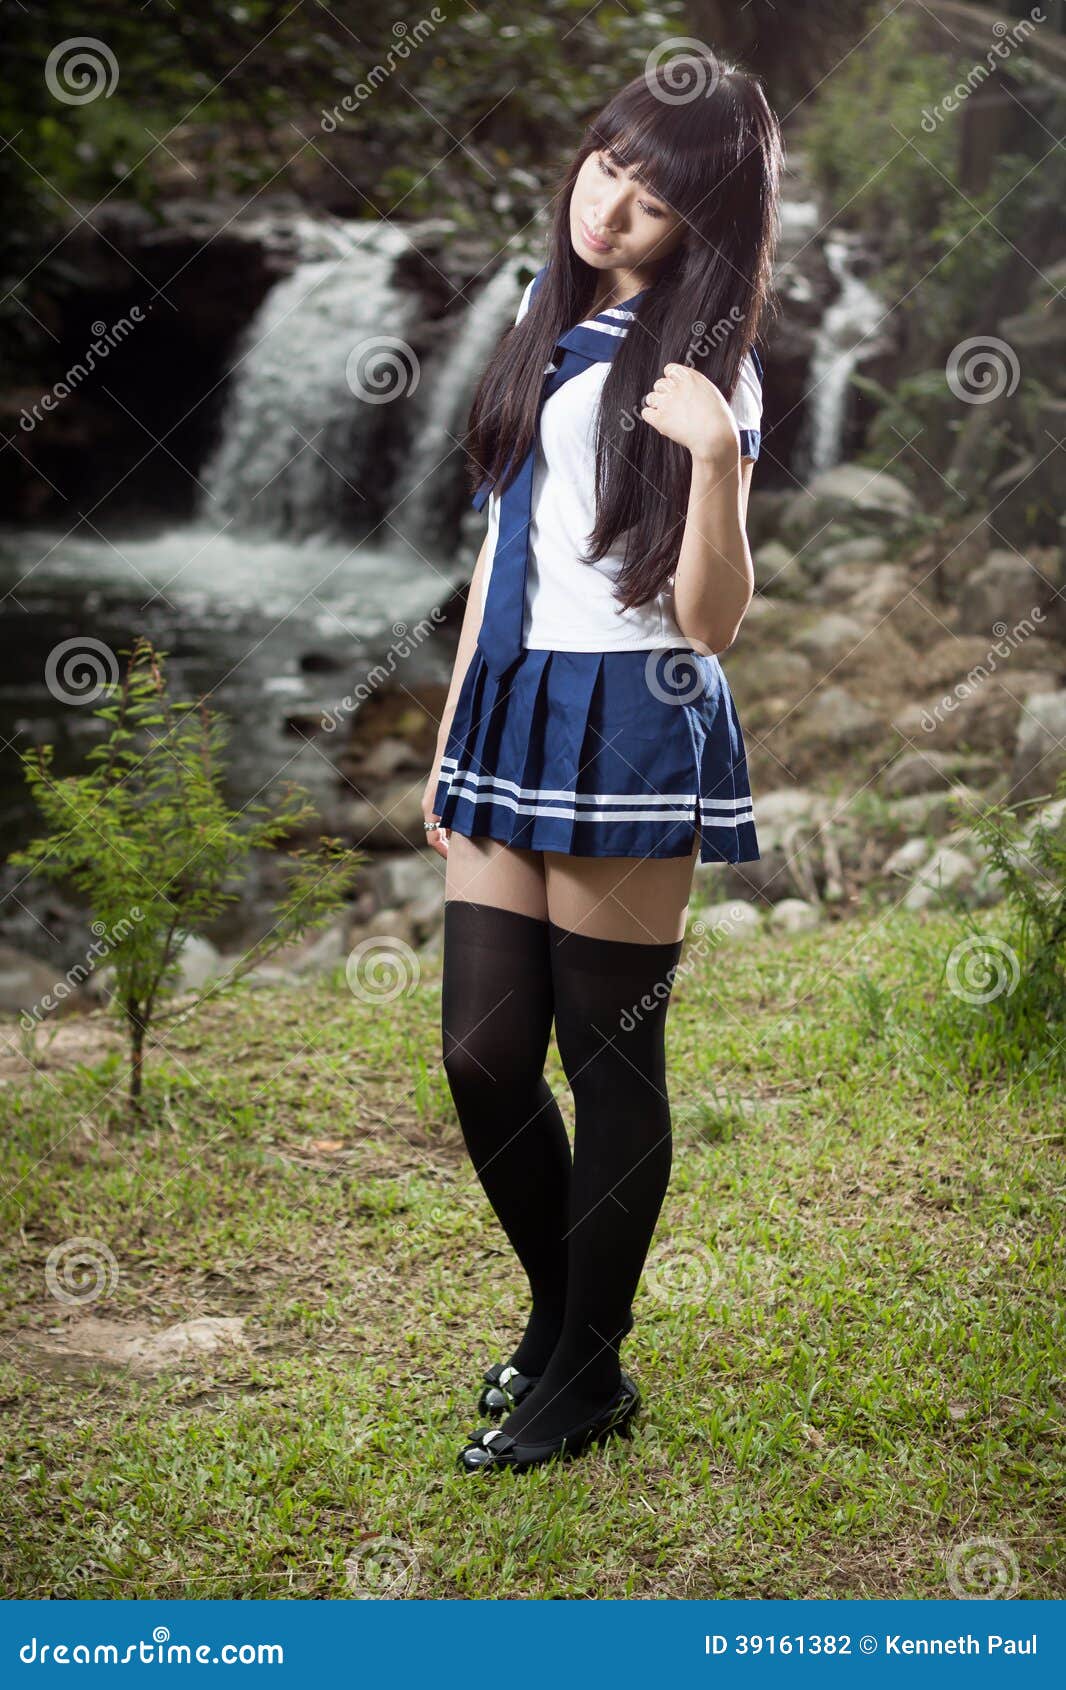 Oriental schoolgirl